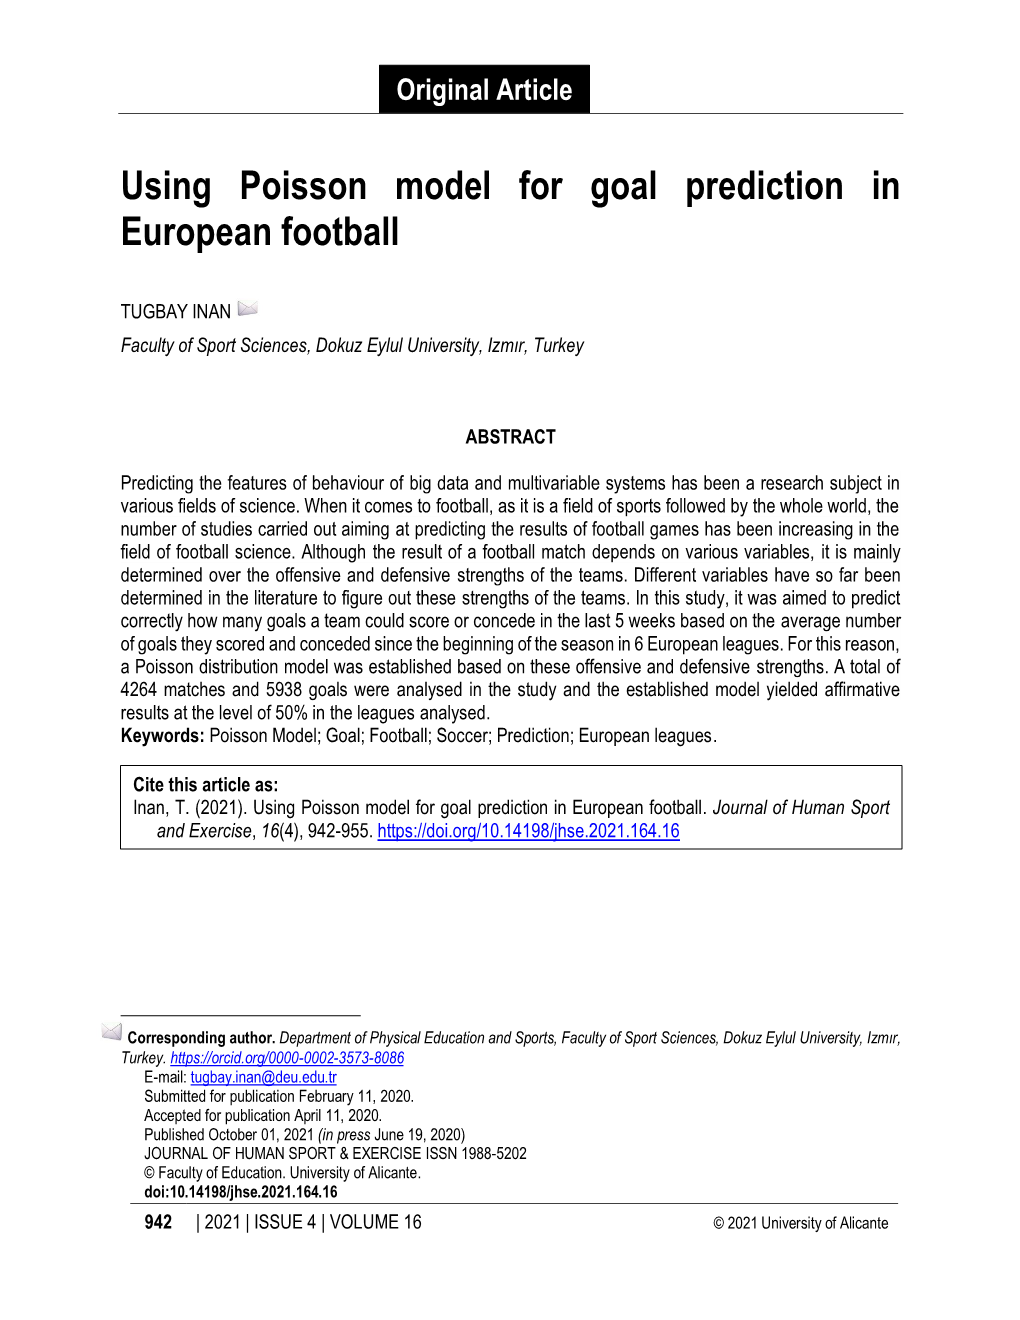 Using Poisson Model for Goal Prediction in European Football